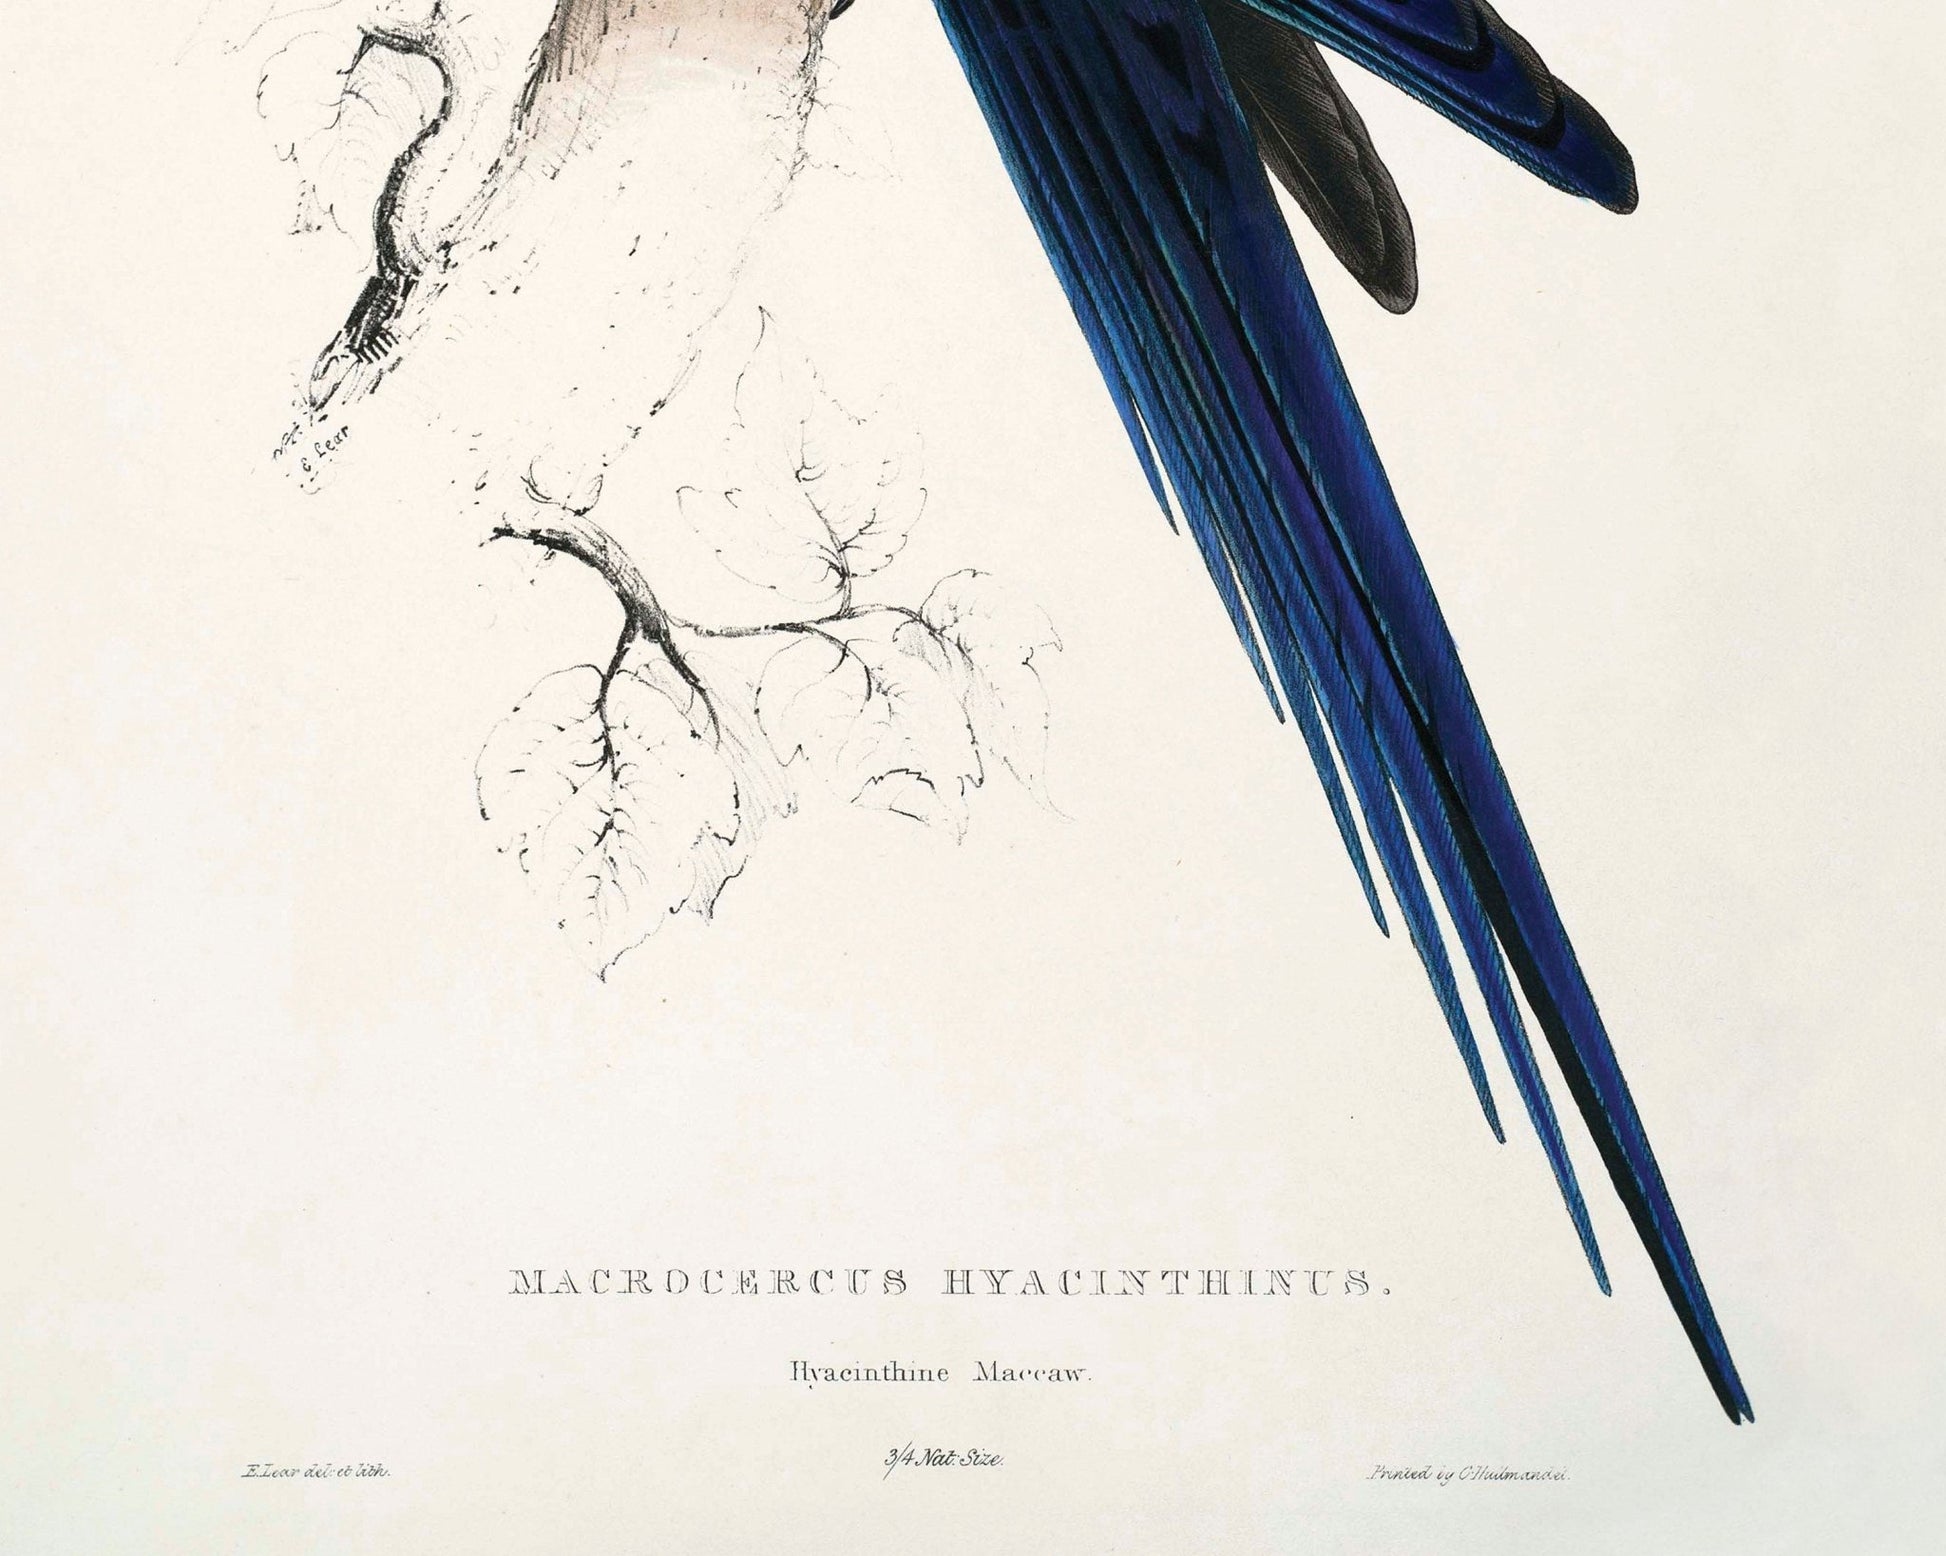 Edward Lear - "Blue Macaw or (Anodorhynchus Leari / Lear's Macaw) " (c.1831) - Mabon Gallery